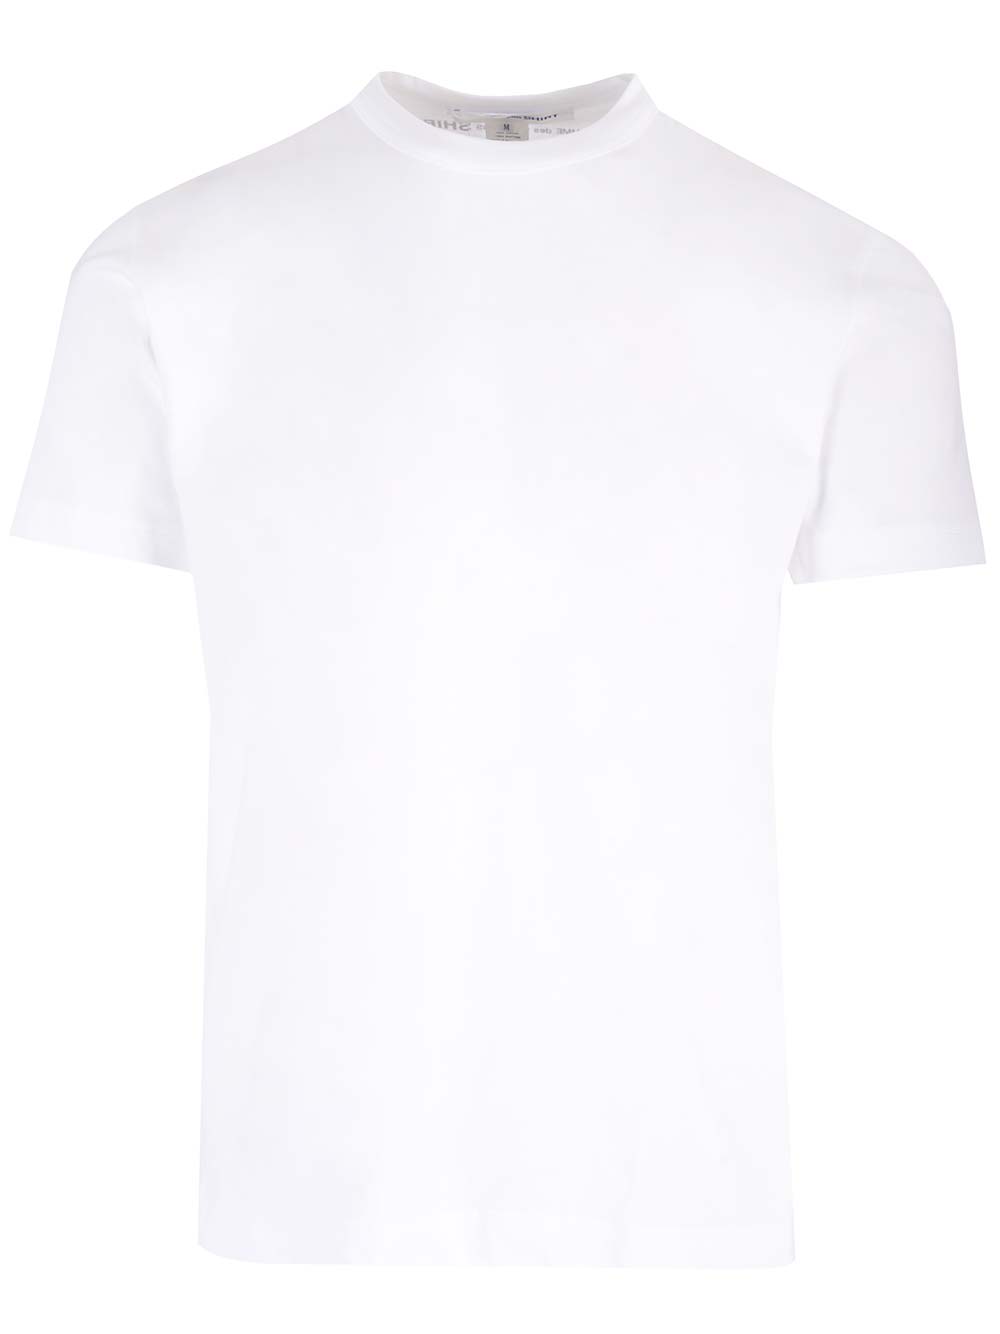 Shop Comme Des Garçons Shirt White Slim T-shirt